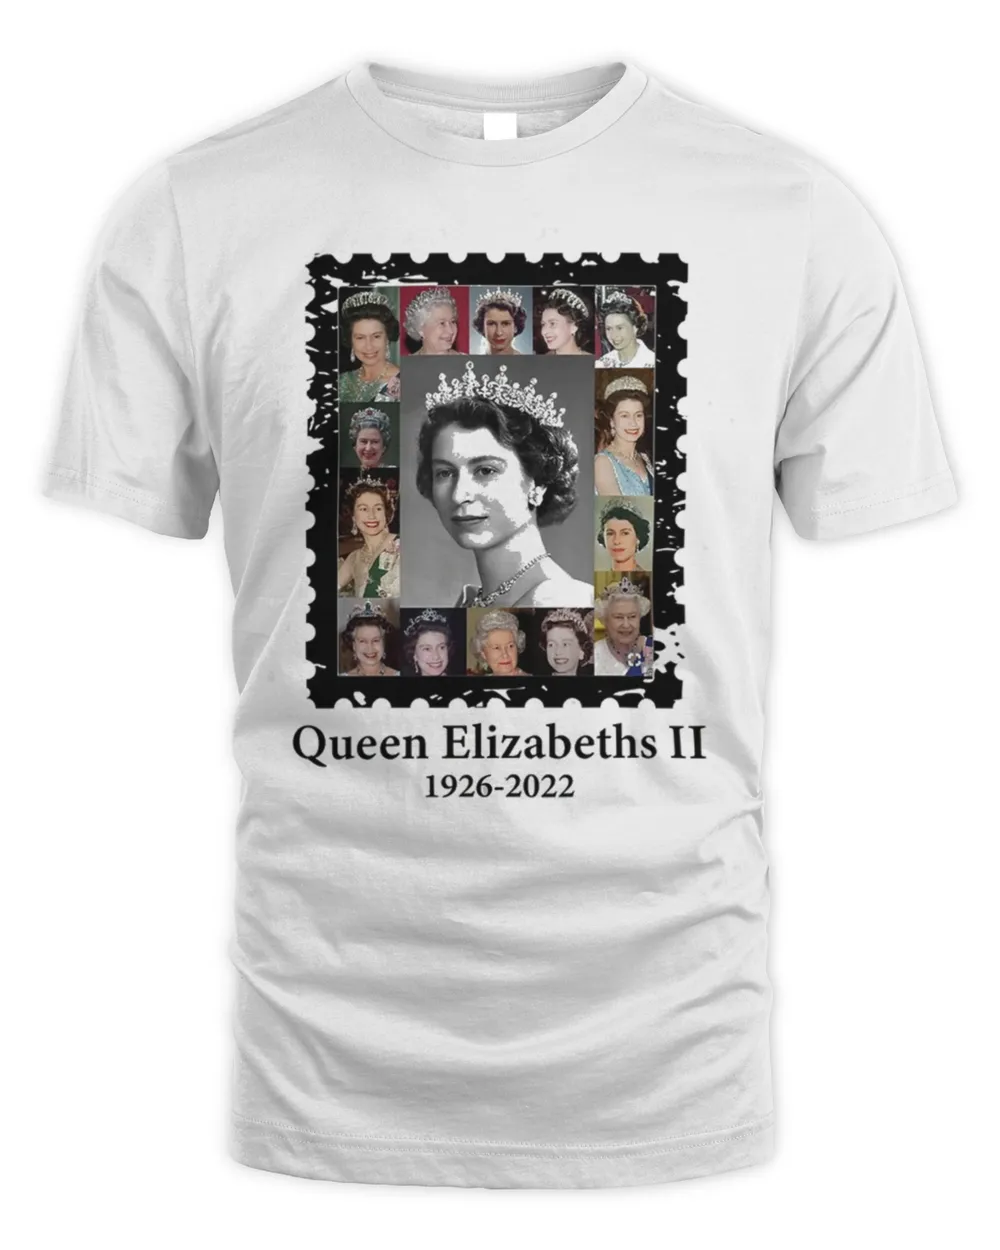 Queen Elizabeth II RIP Majesty The Queen 1926-2022 Shirt